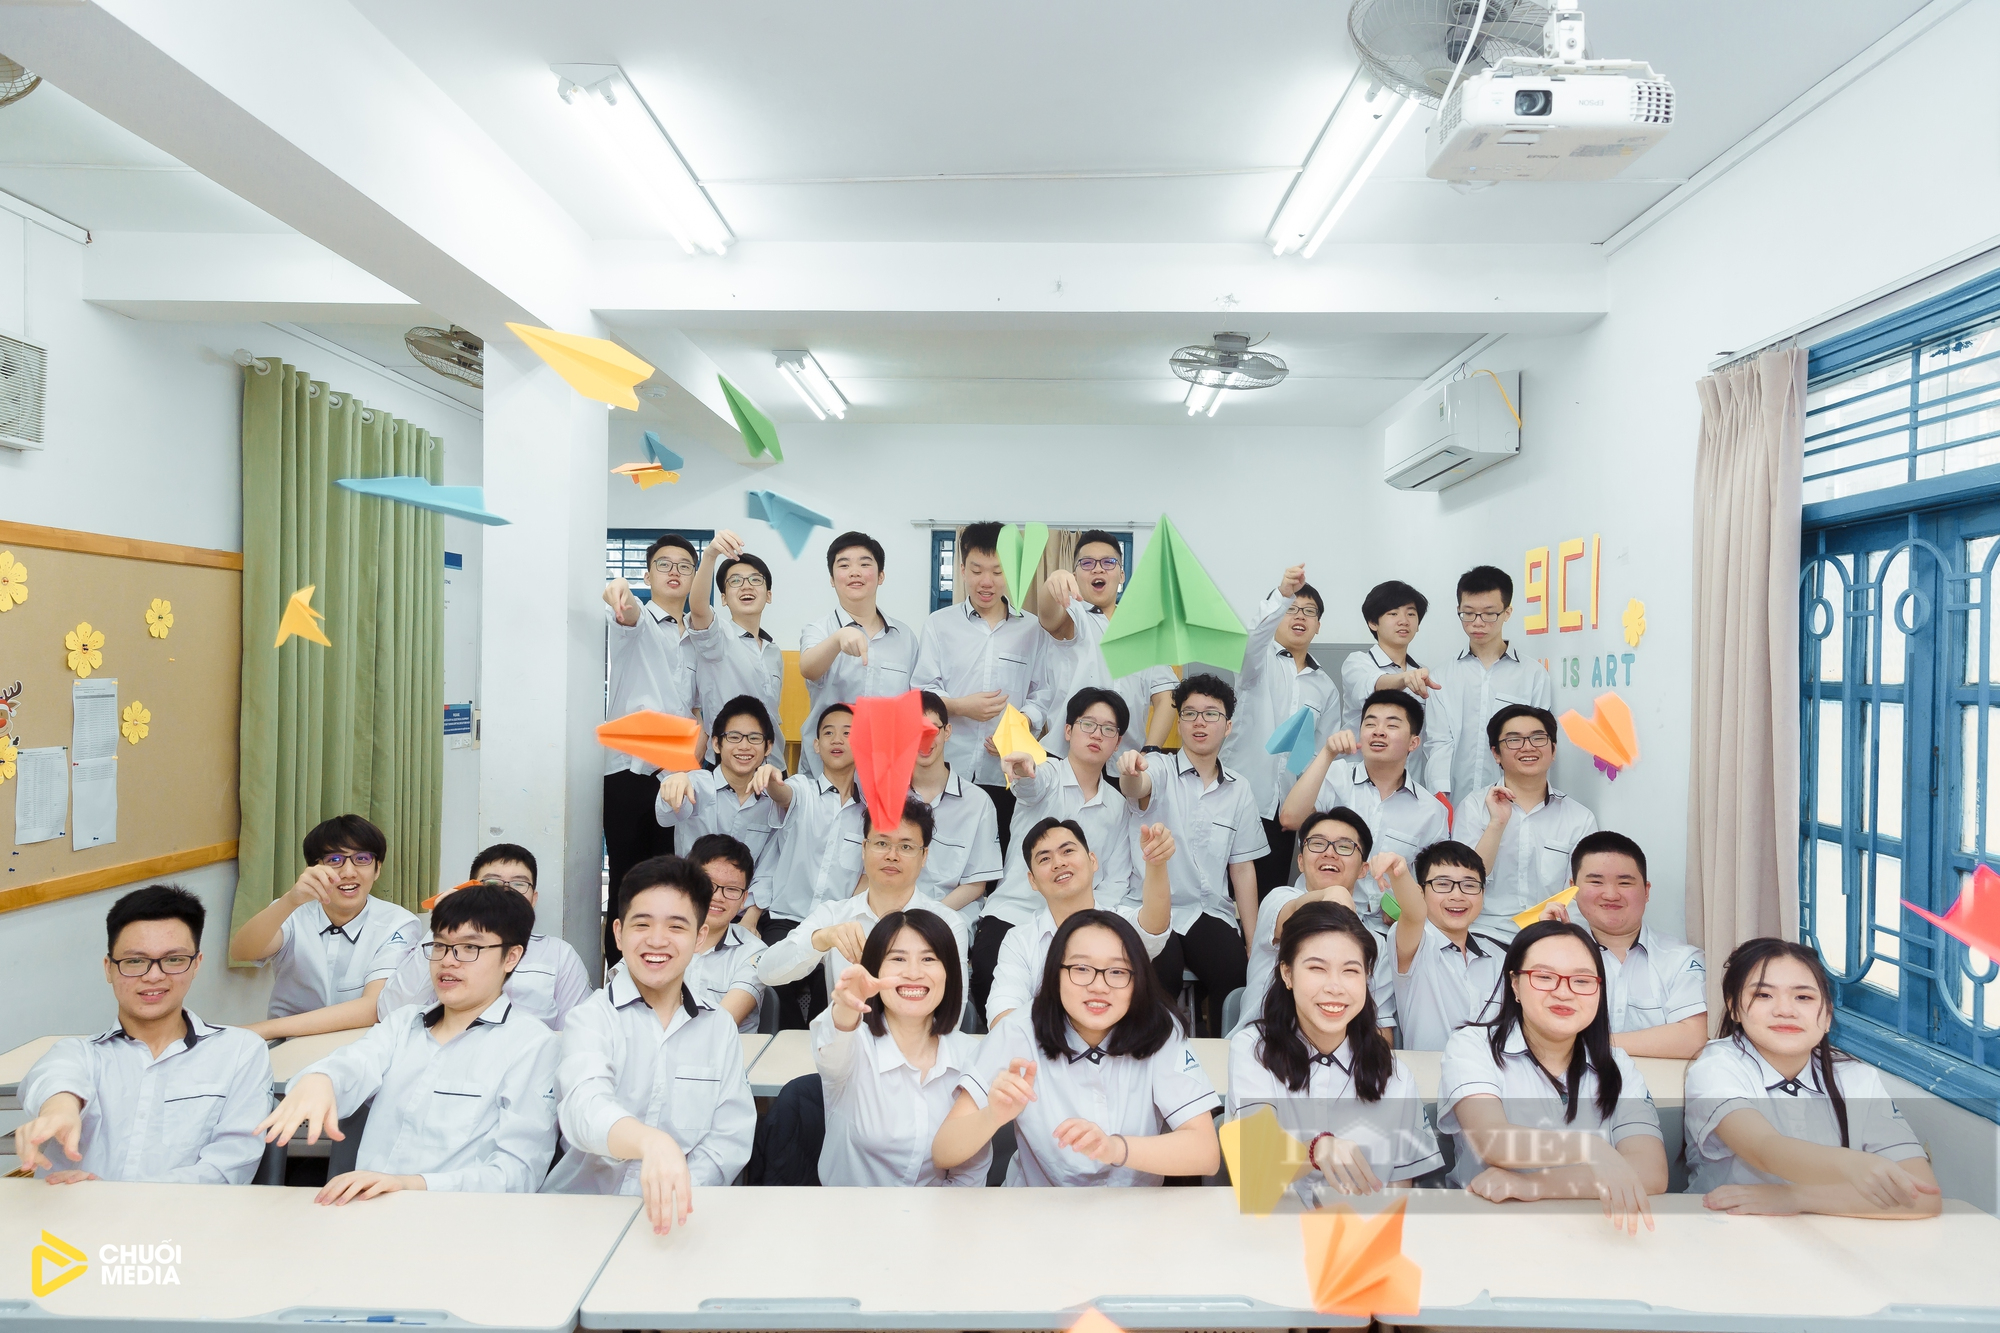 Cả lớp đỗ trường Chuyên ở Hà Nội với nhiều thủ khoa, á khoa: Bí quyết từ người thầy - Ảnh 3.